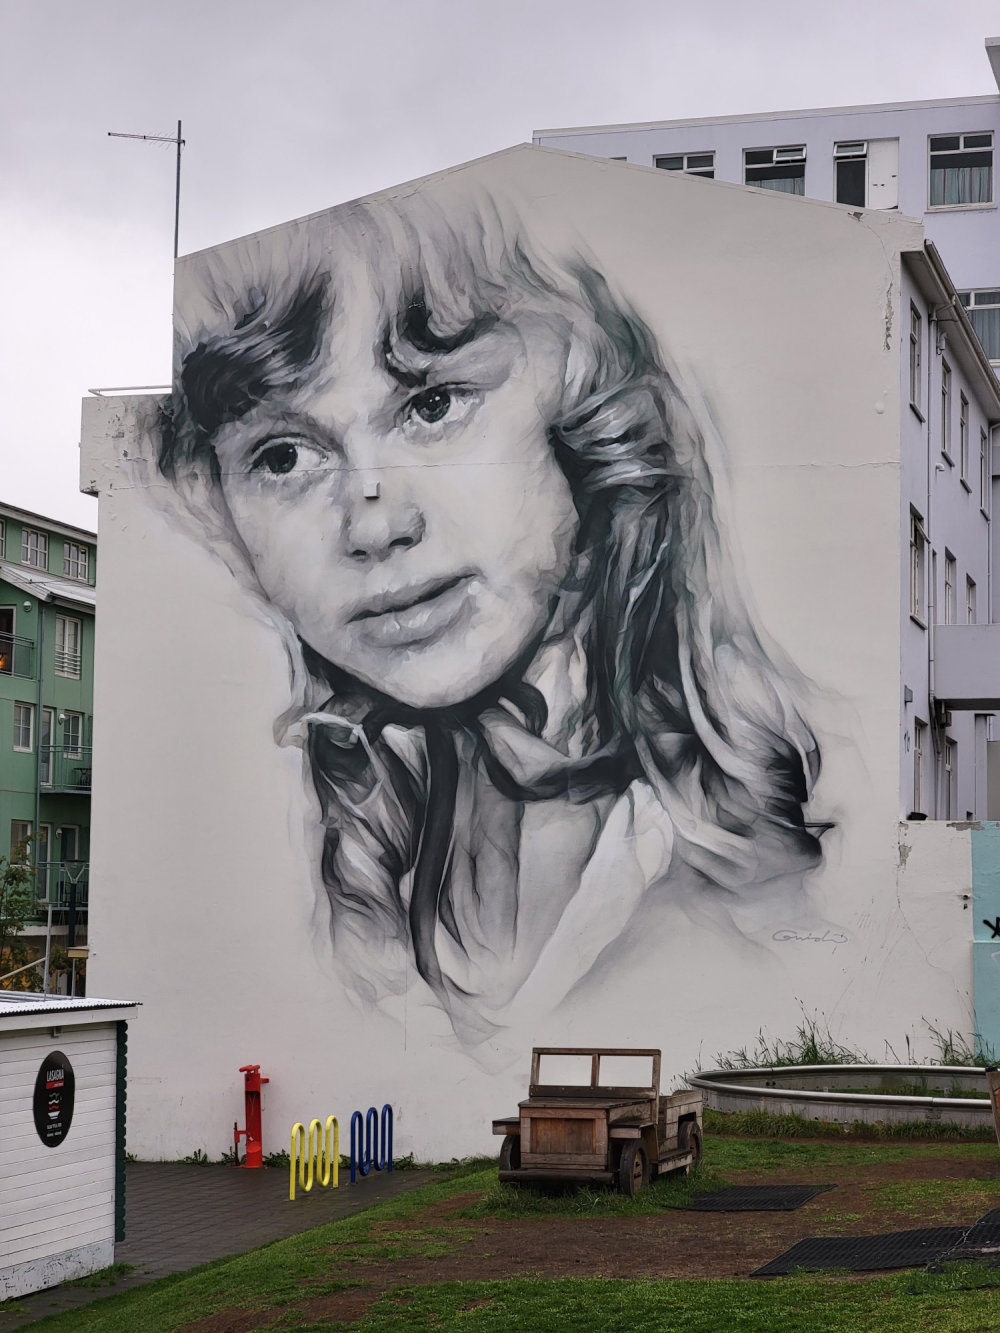 mural in Akureyri by artist Guido Van Helton.